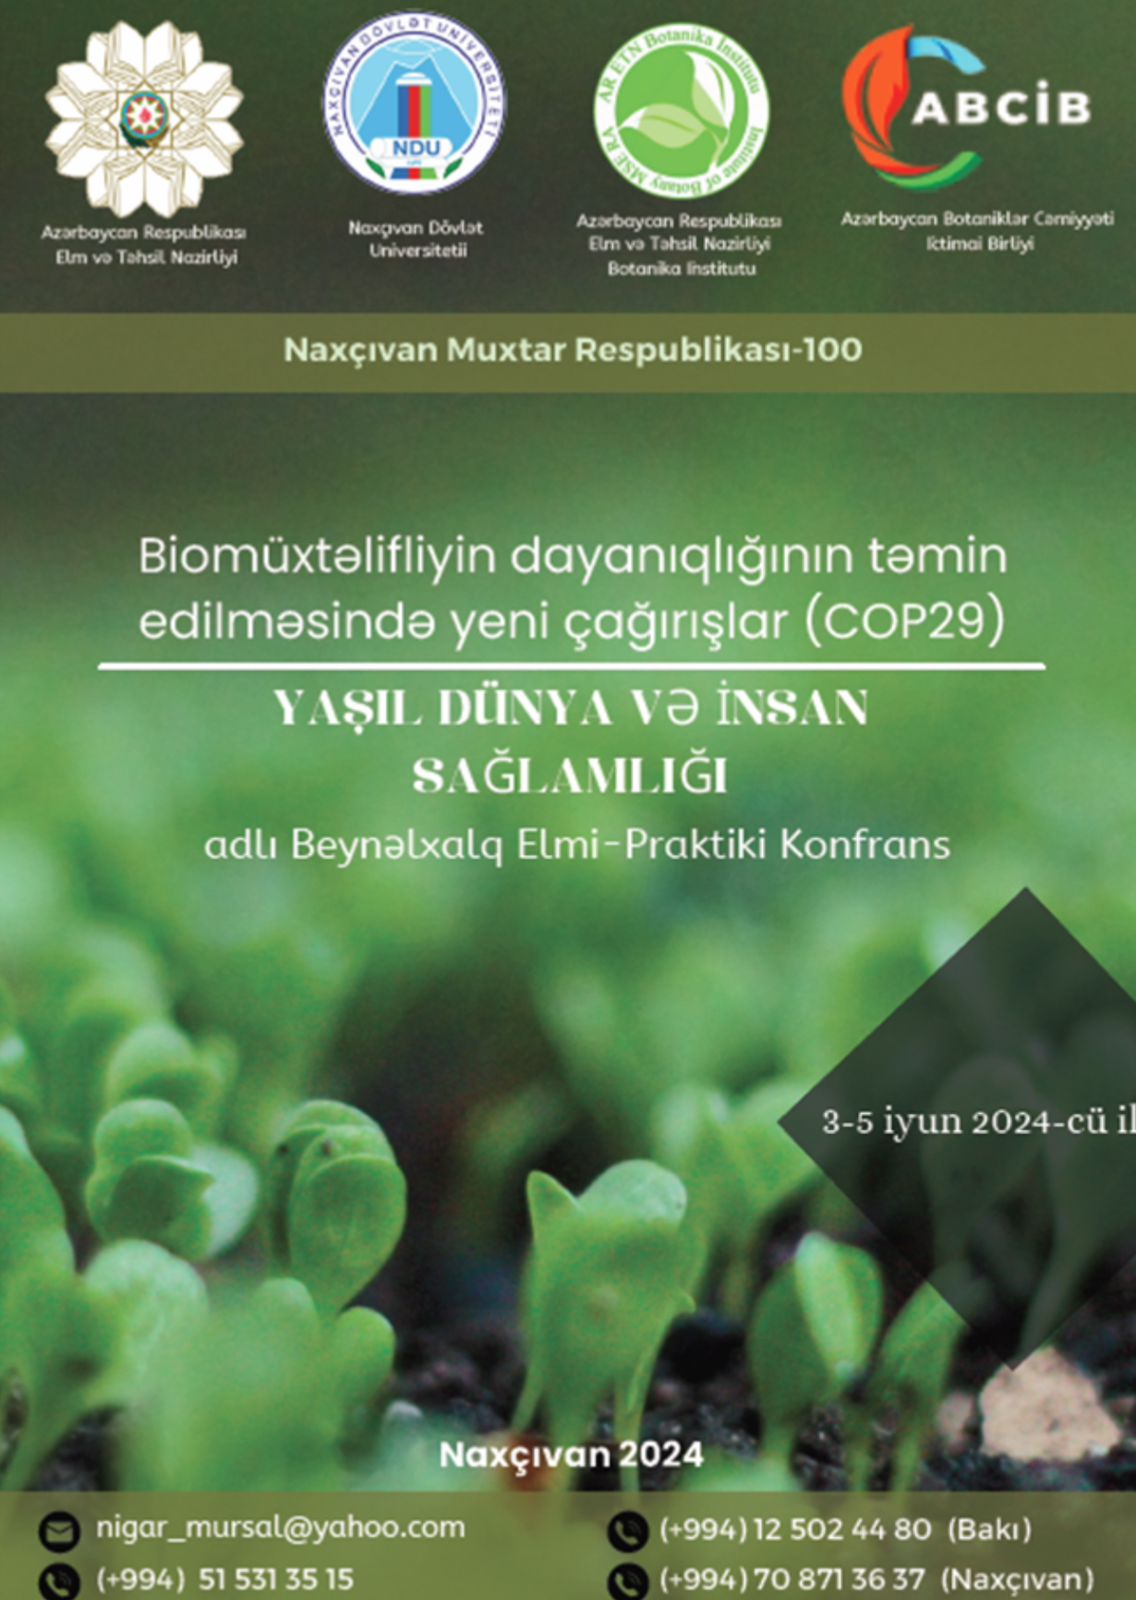 “Biomüxtəlifliyin dayanıqlığının təmin edilməsində yeni çağırışlar (COP29) yaşıl dünya və insan sağlamlığı” adlı konfrans keçiriləcək  